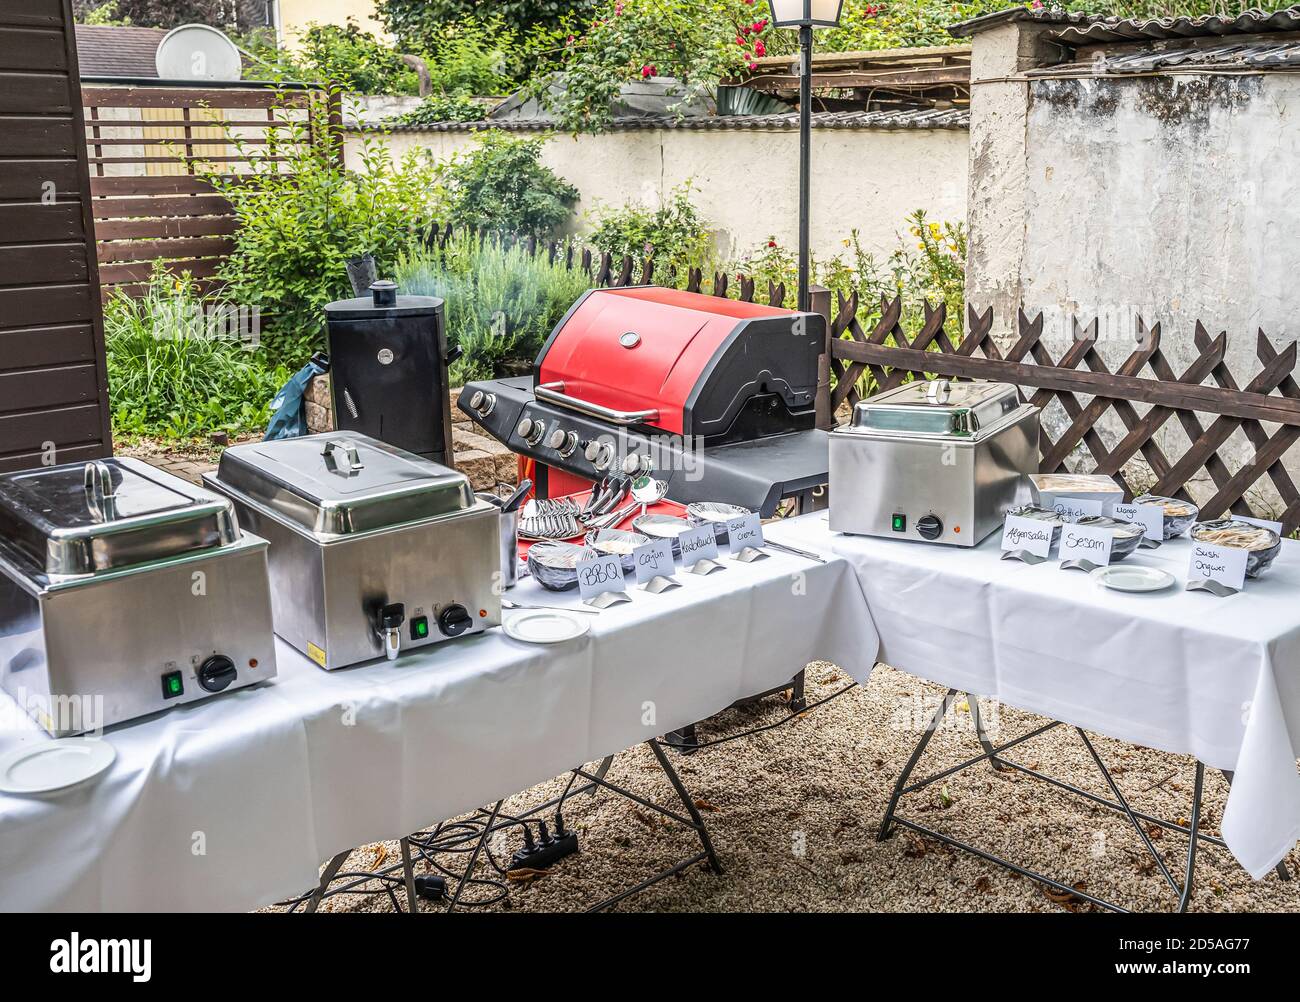 Großer Grill und Raucher Setup mit Saucen Grillen Fleisch bbq Party Essen  im Freien Gartenparty Stockfotografie - Alamy